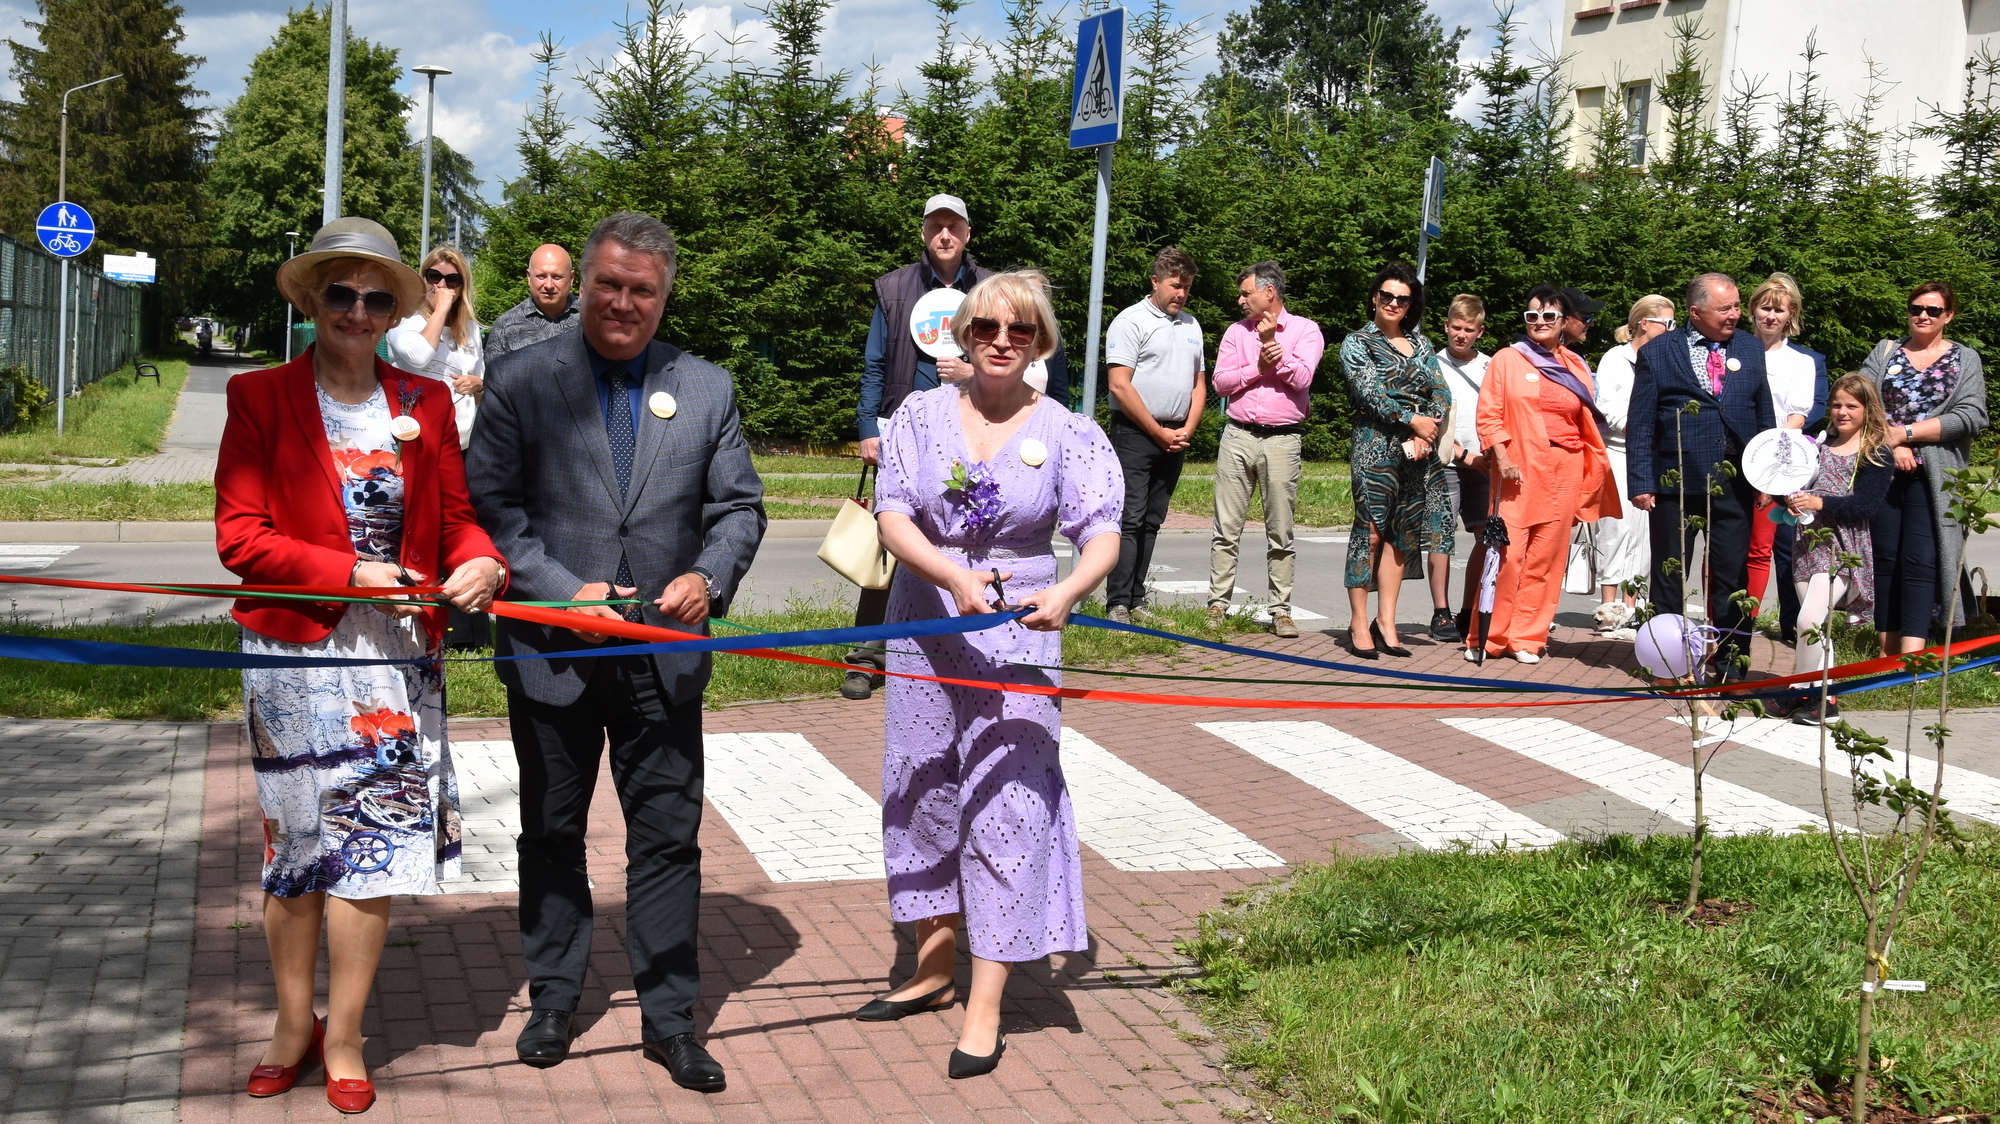 The ceremonial opening of Aleja Lilakowa Przedsiębiorców, cutting the ribbon